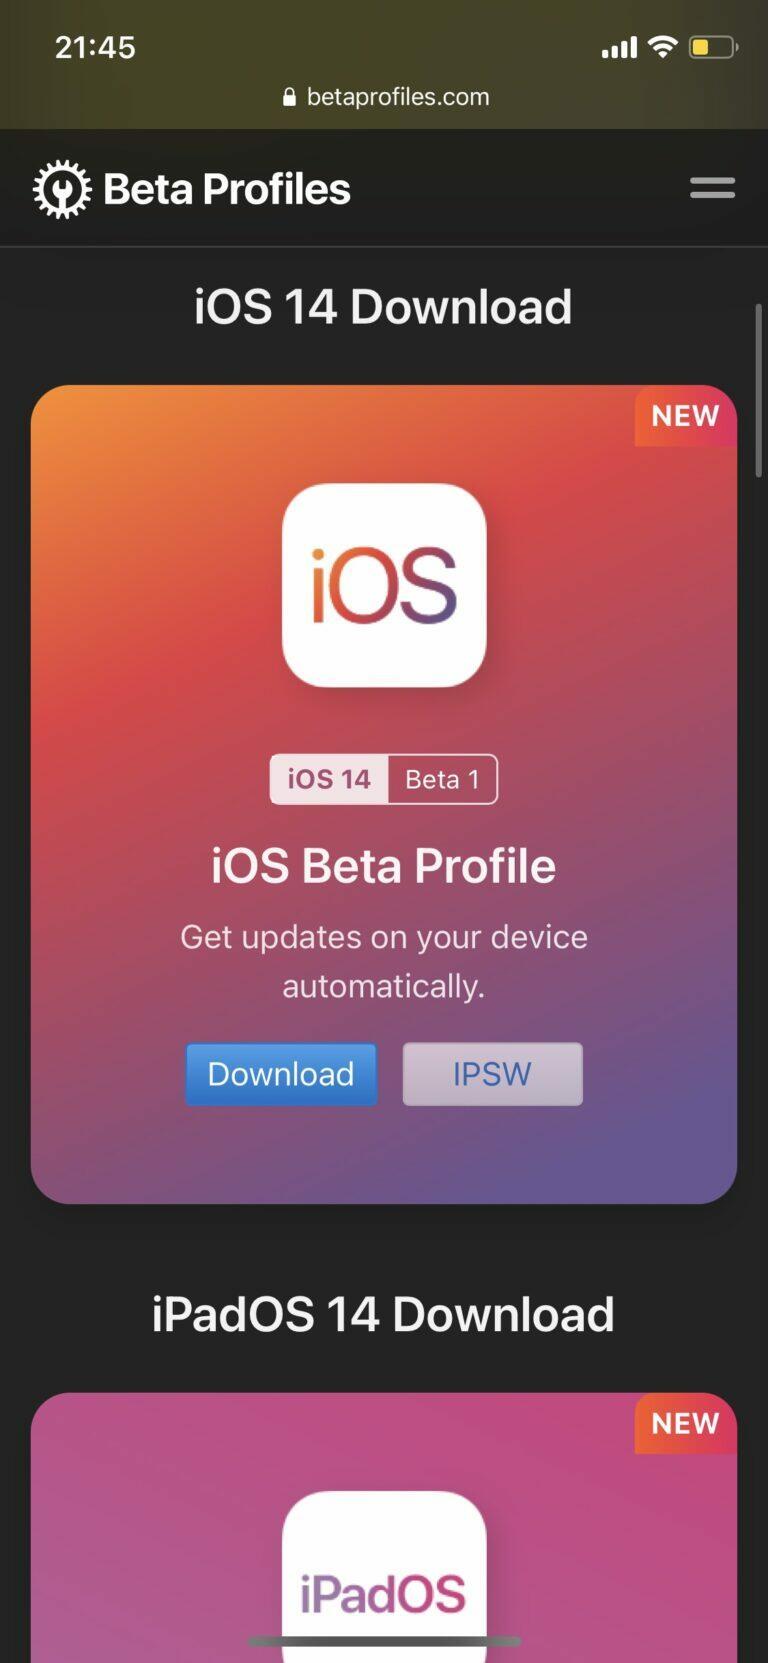 beta profiles com ios 14